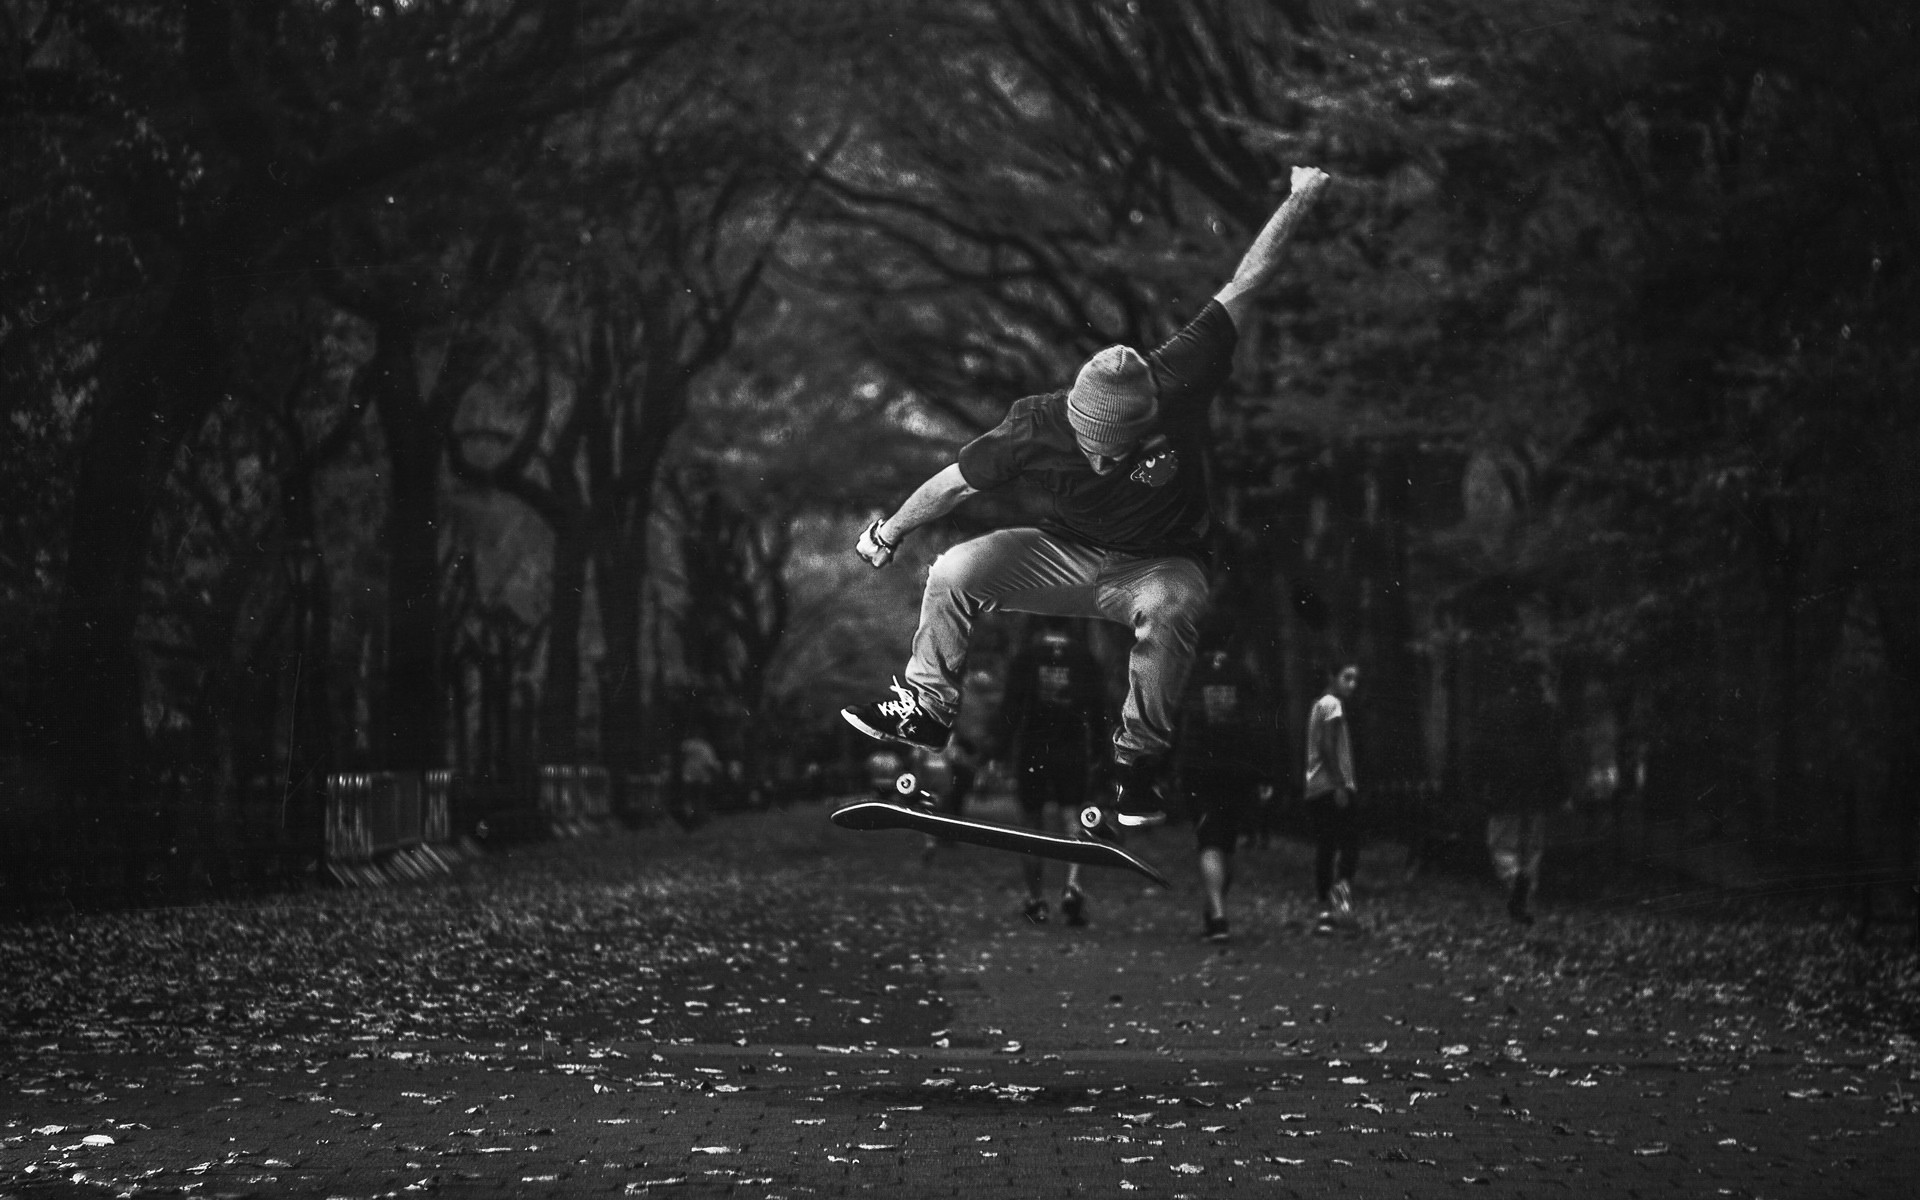 1920x1200 Skateboard Skateboarding Jump Stop Action BW wallpaper |  | 24691  | WallpaperUP